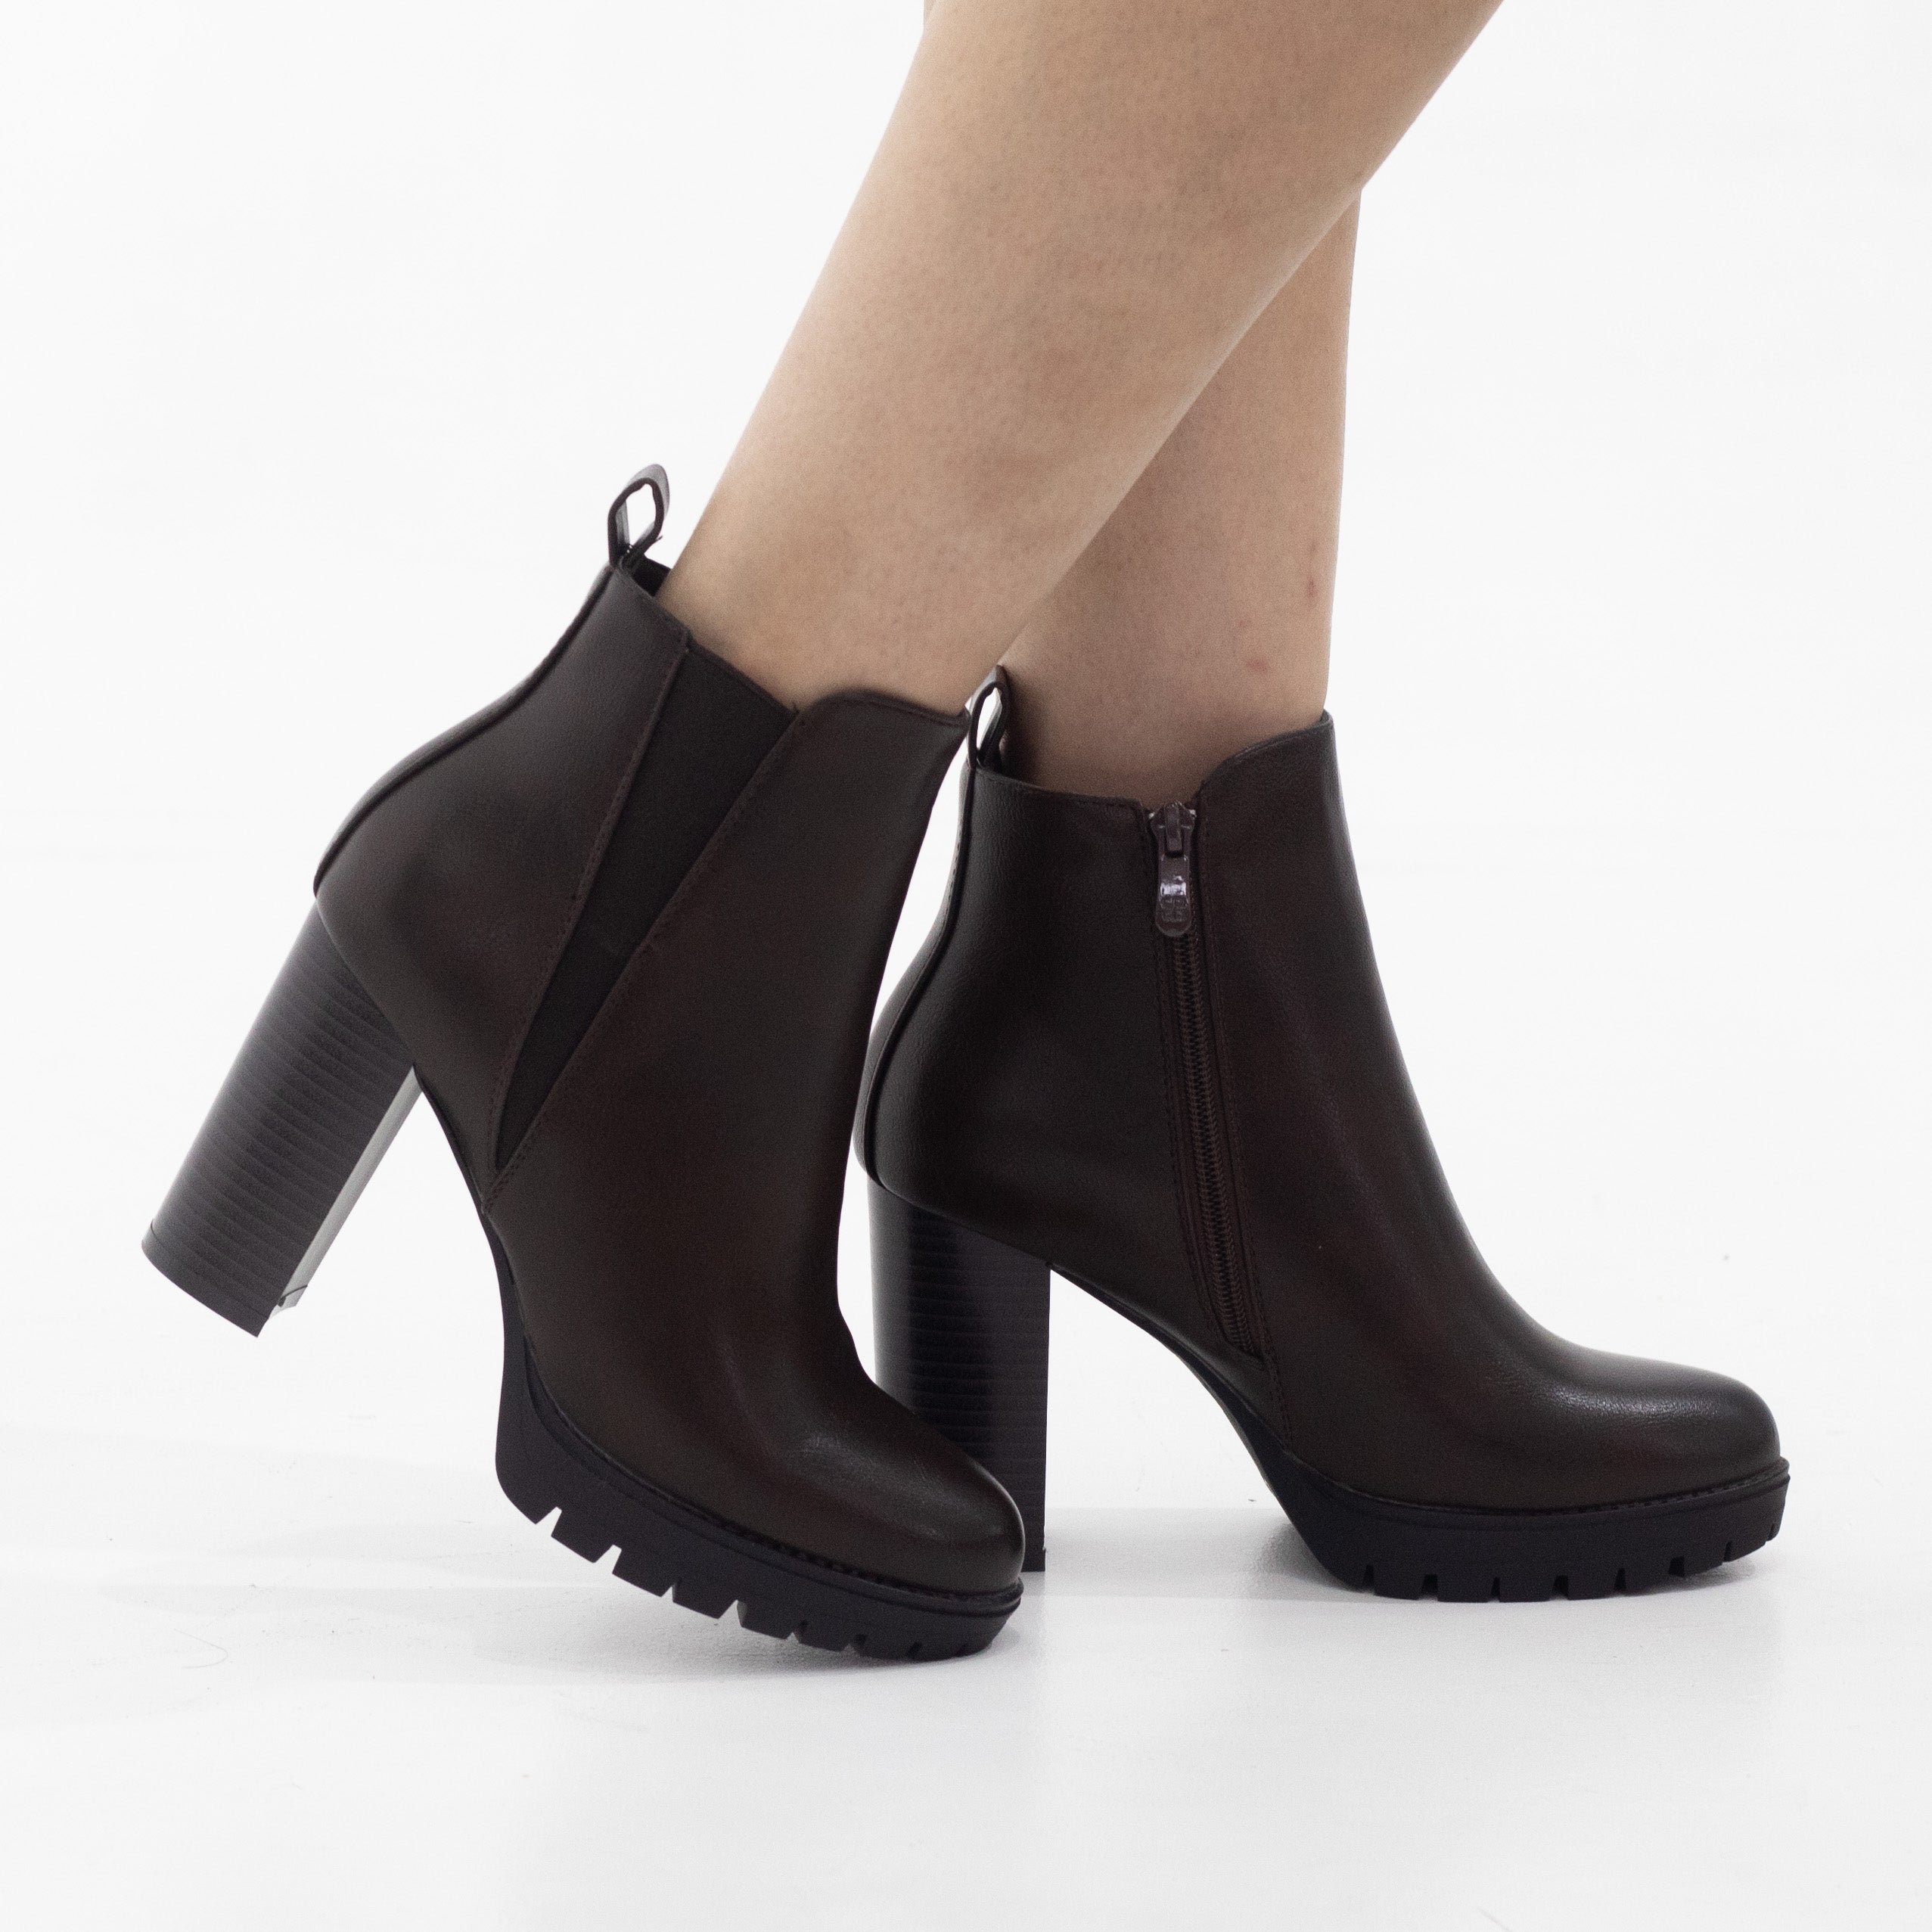 Yafa 10cm  heel side zip ankle boot